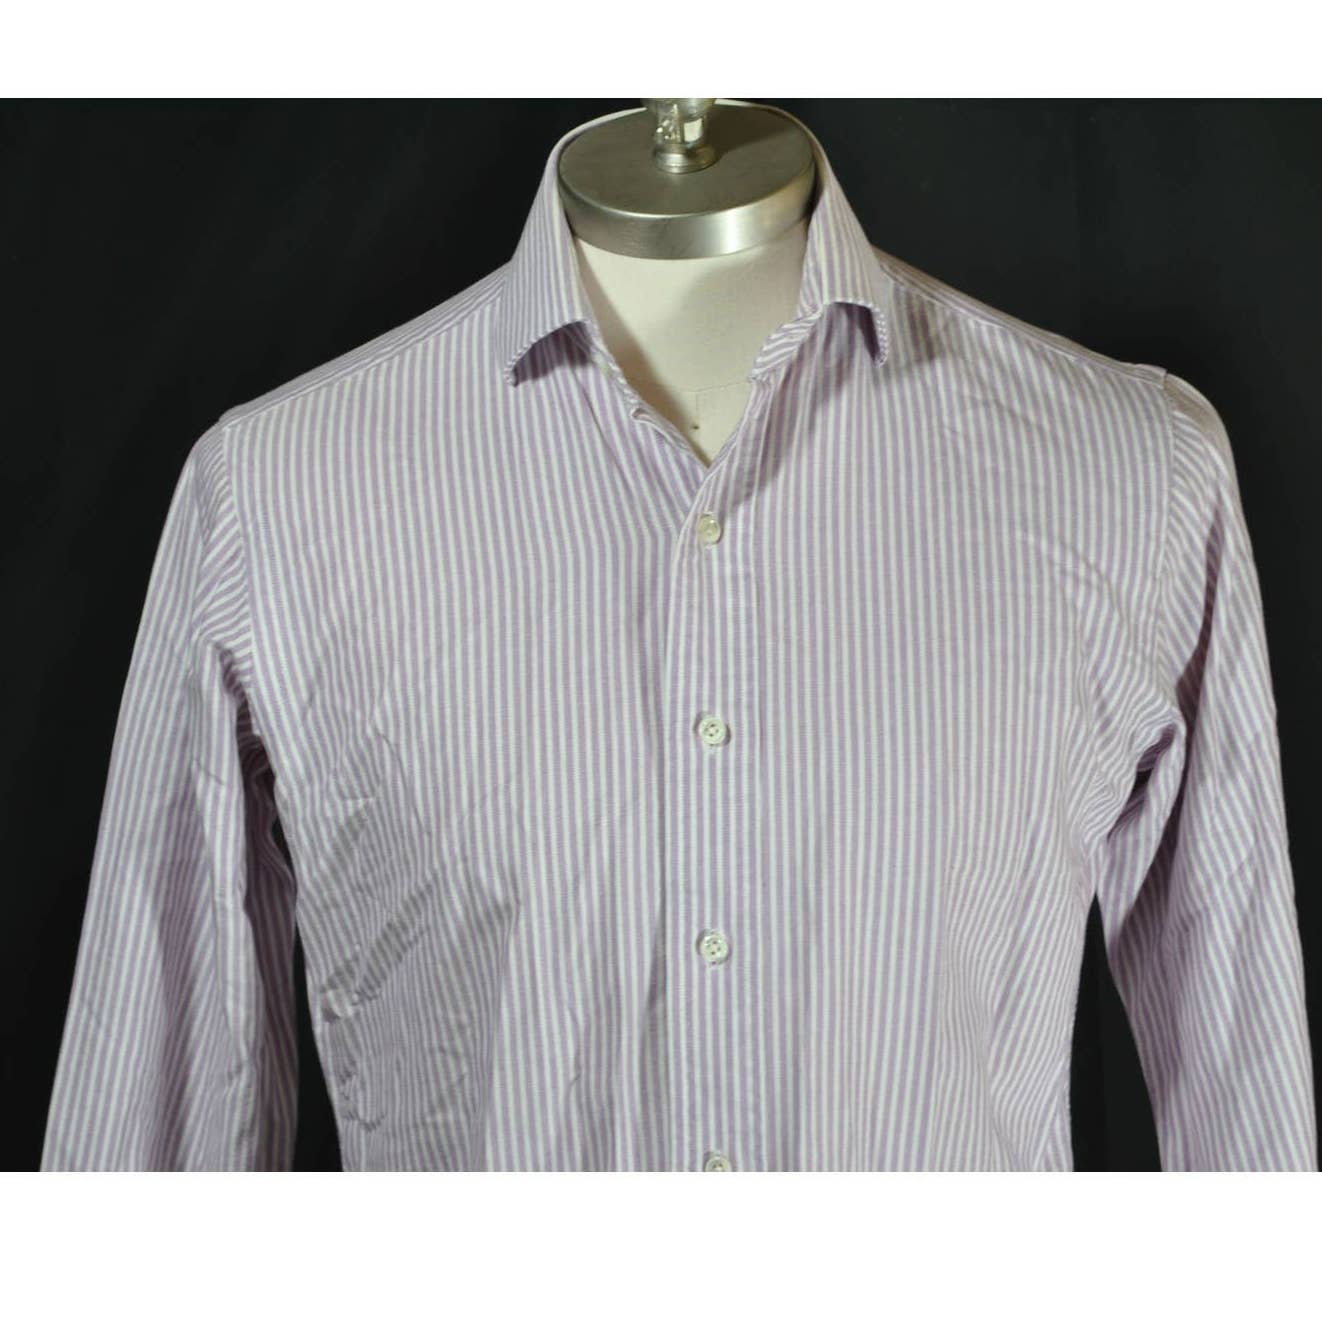 Polo Ralph Lauren Regent Classic Fit Purple White Shirt - 14.5